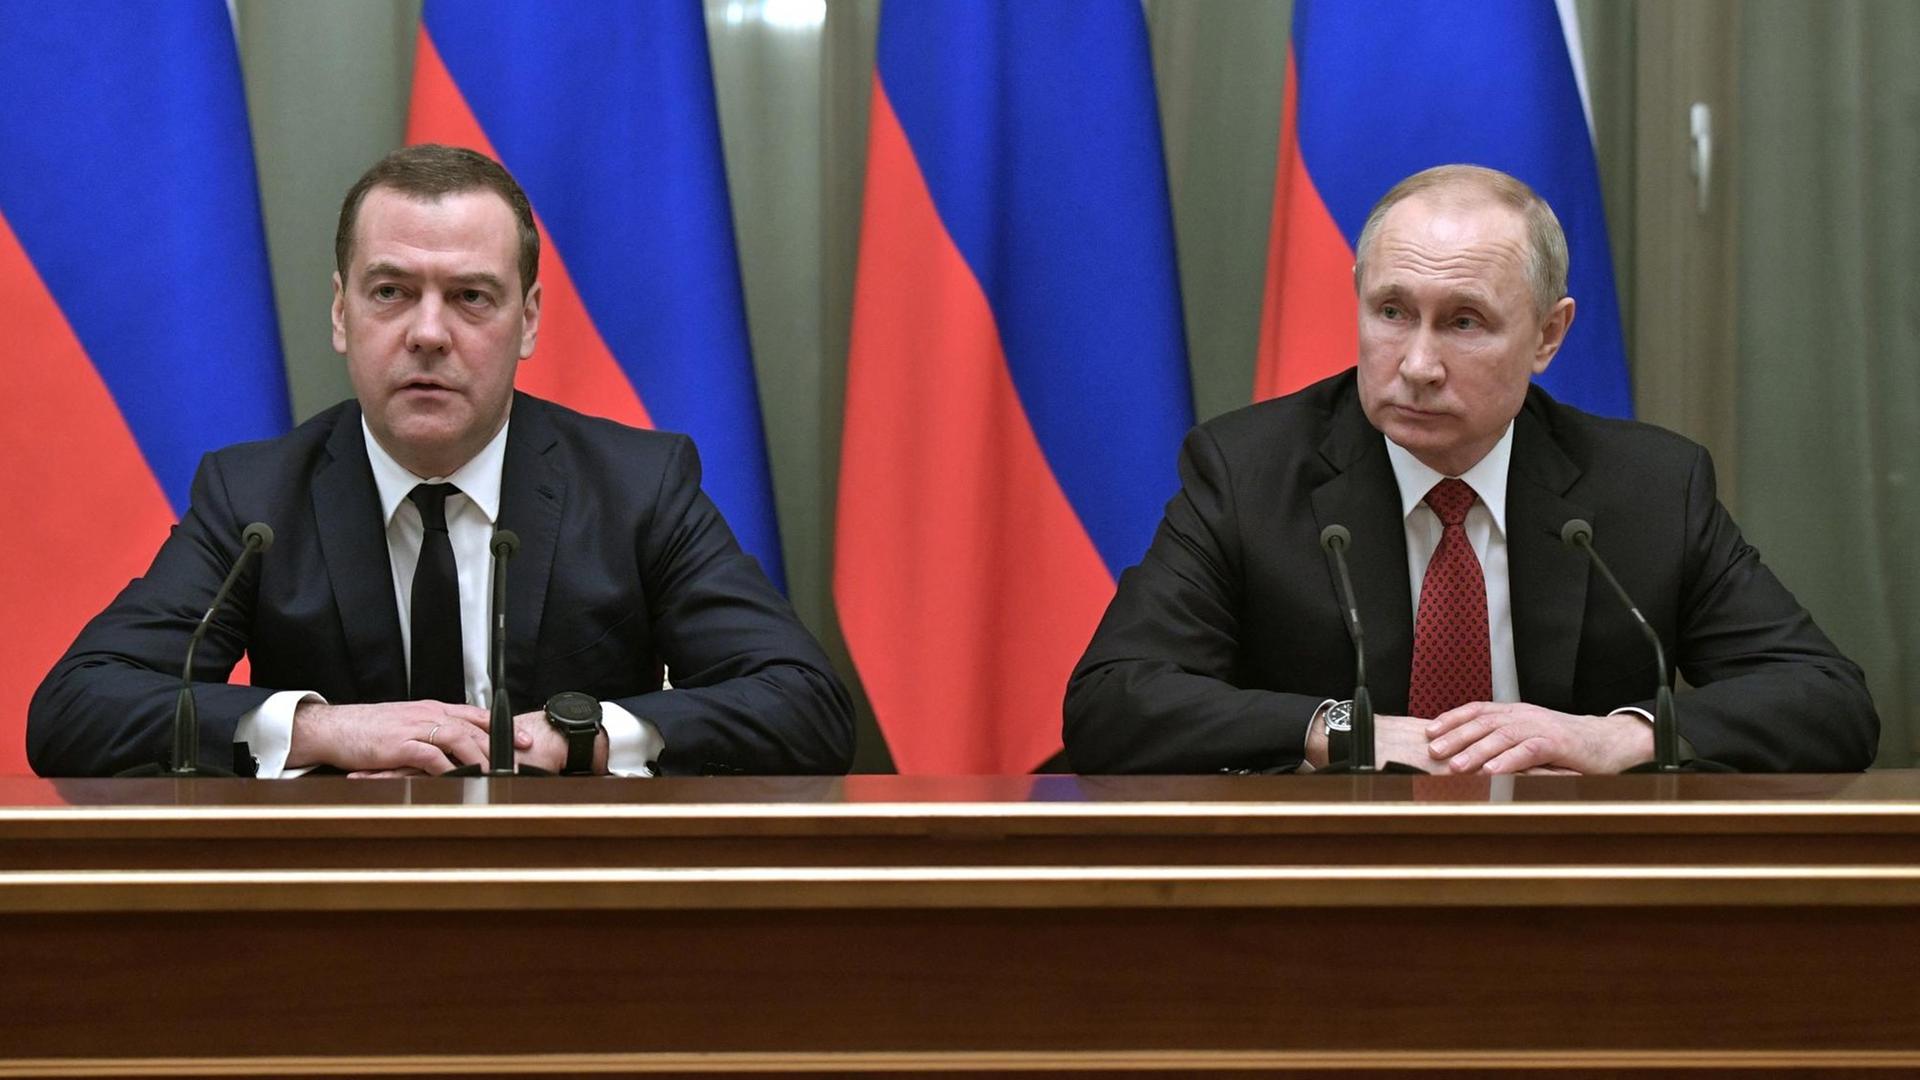 Der russische Regierungs-Chef Medwedew sitzt links, rechts sitzt der russische Staats-Chef Putin.